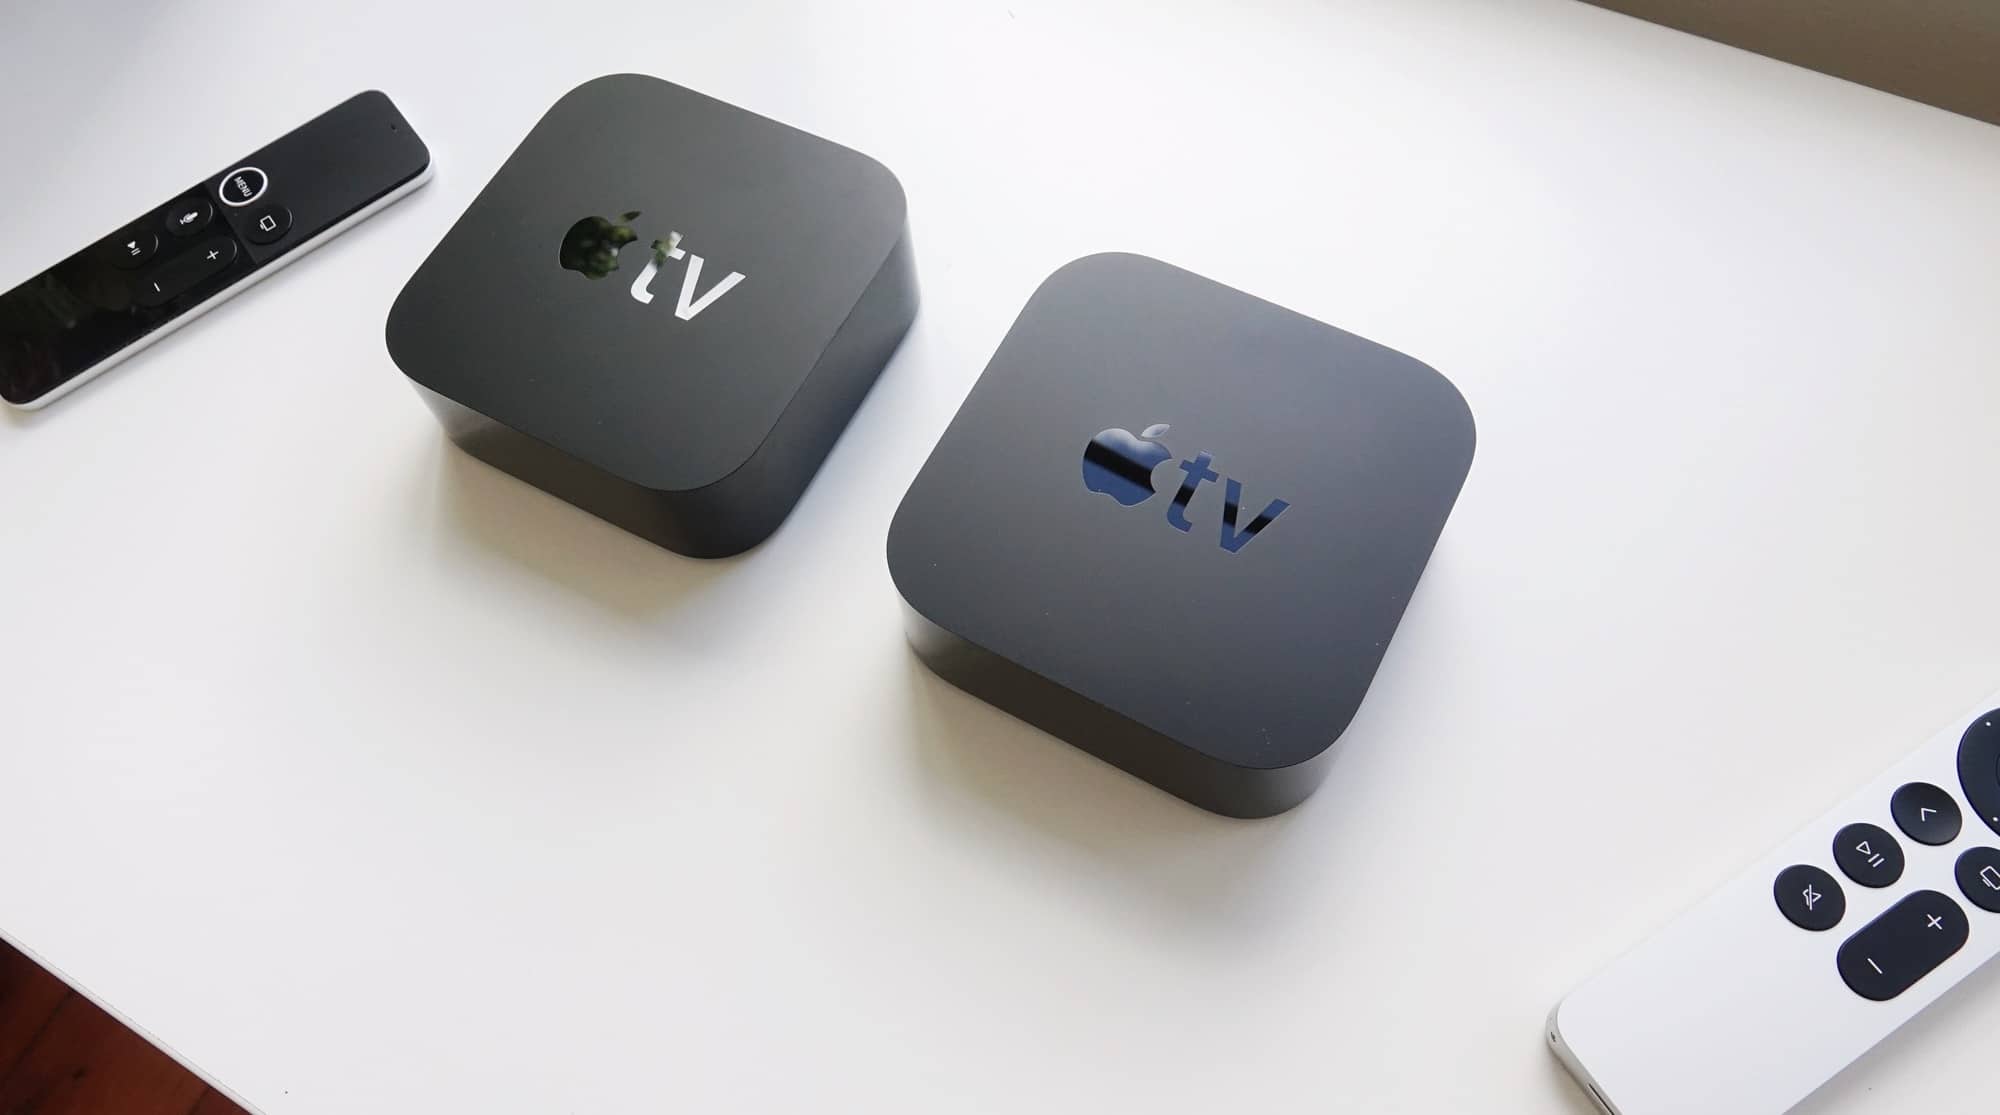 2017 Apple TV 4K (left) vs 2021 Apple TV 4K